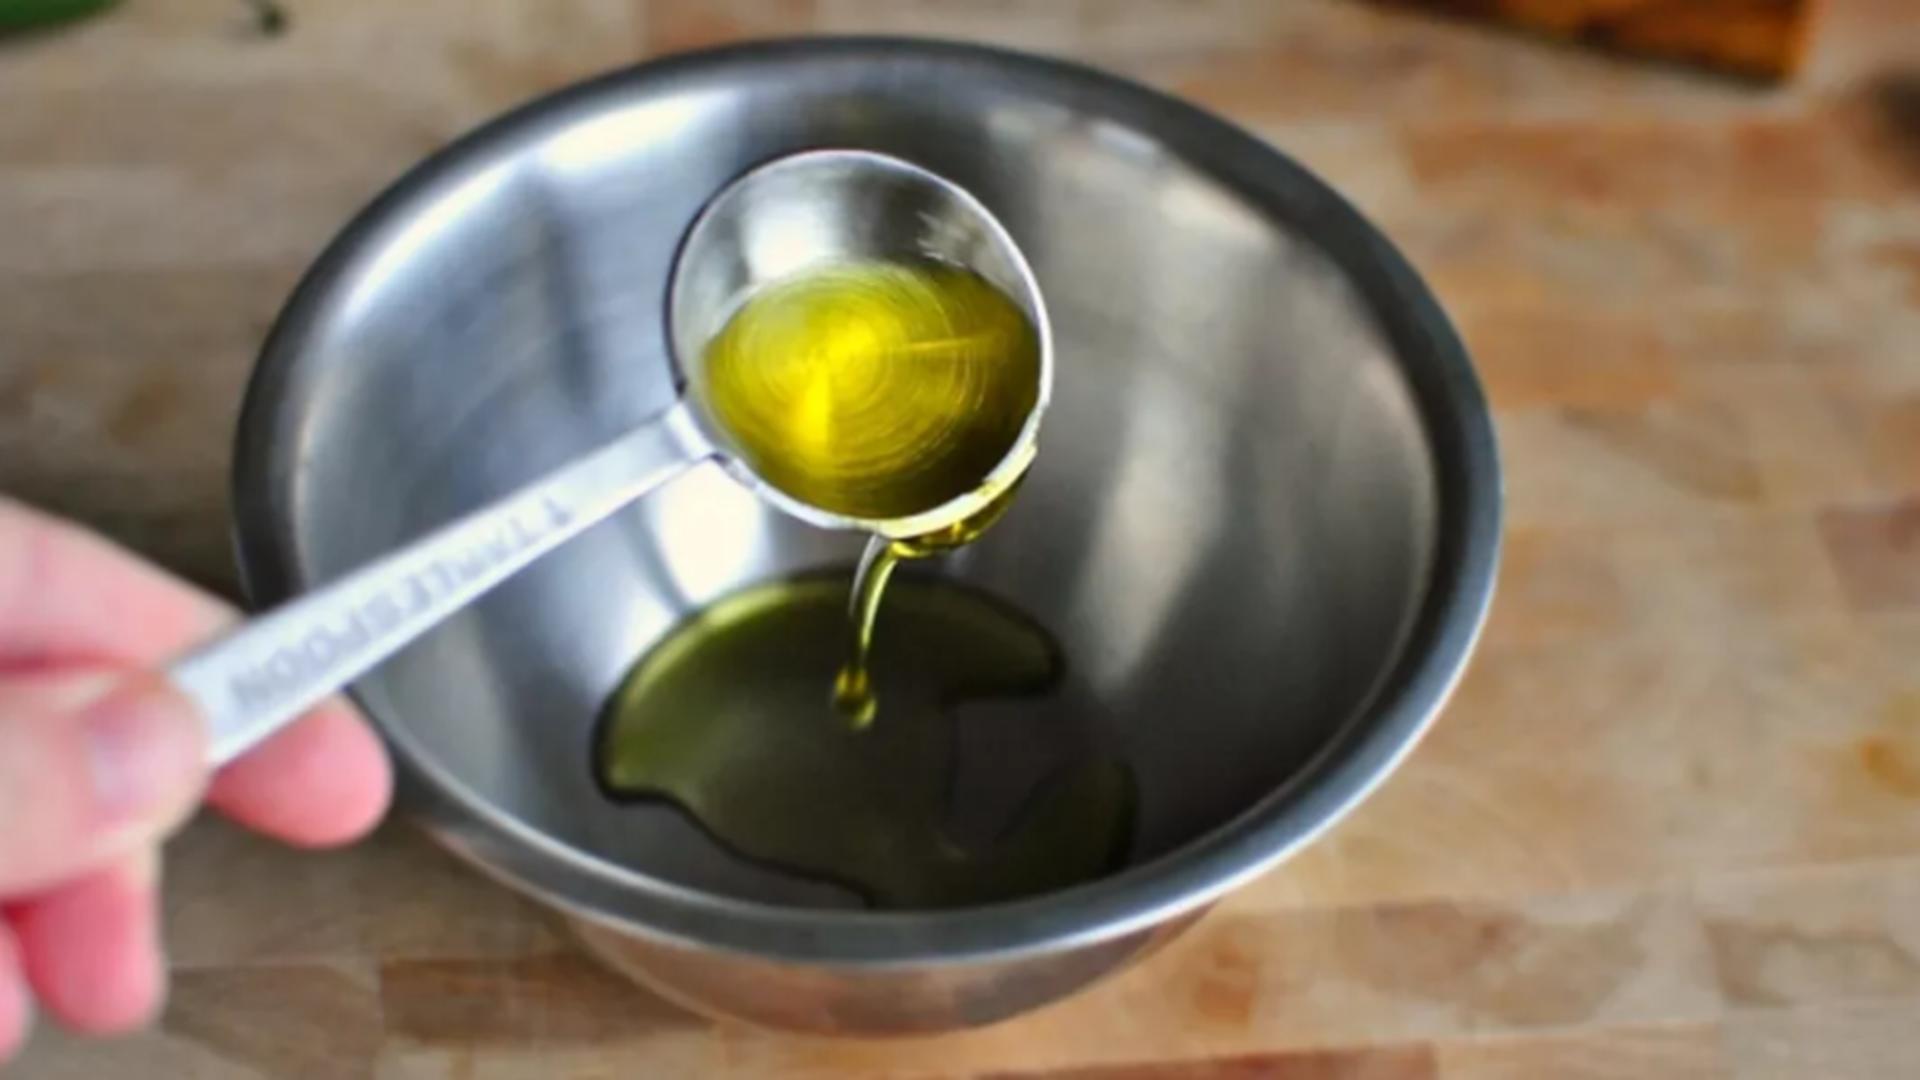 Care e diferența între uleiul de măsline virgin și cel extra virgin – Unul poate fi folosit la prăjit, celălalt doar în salate